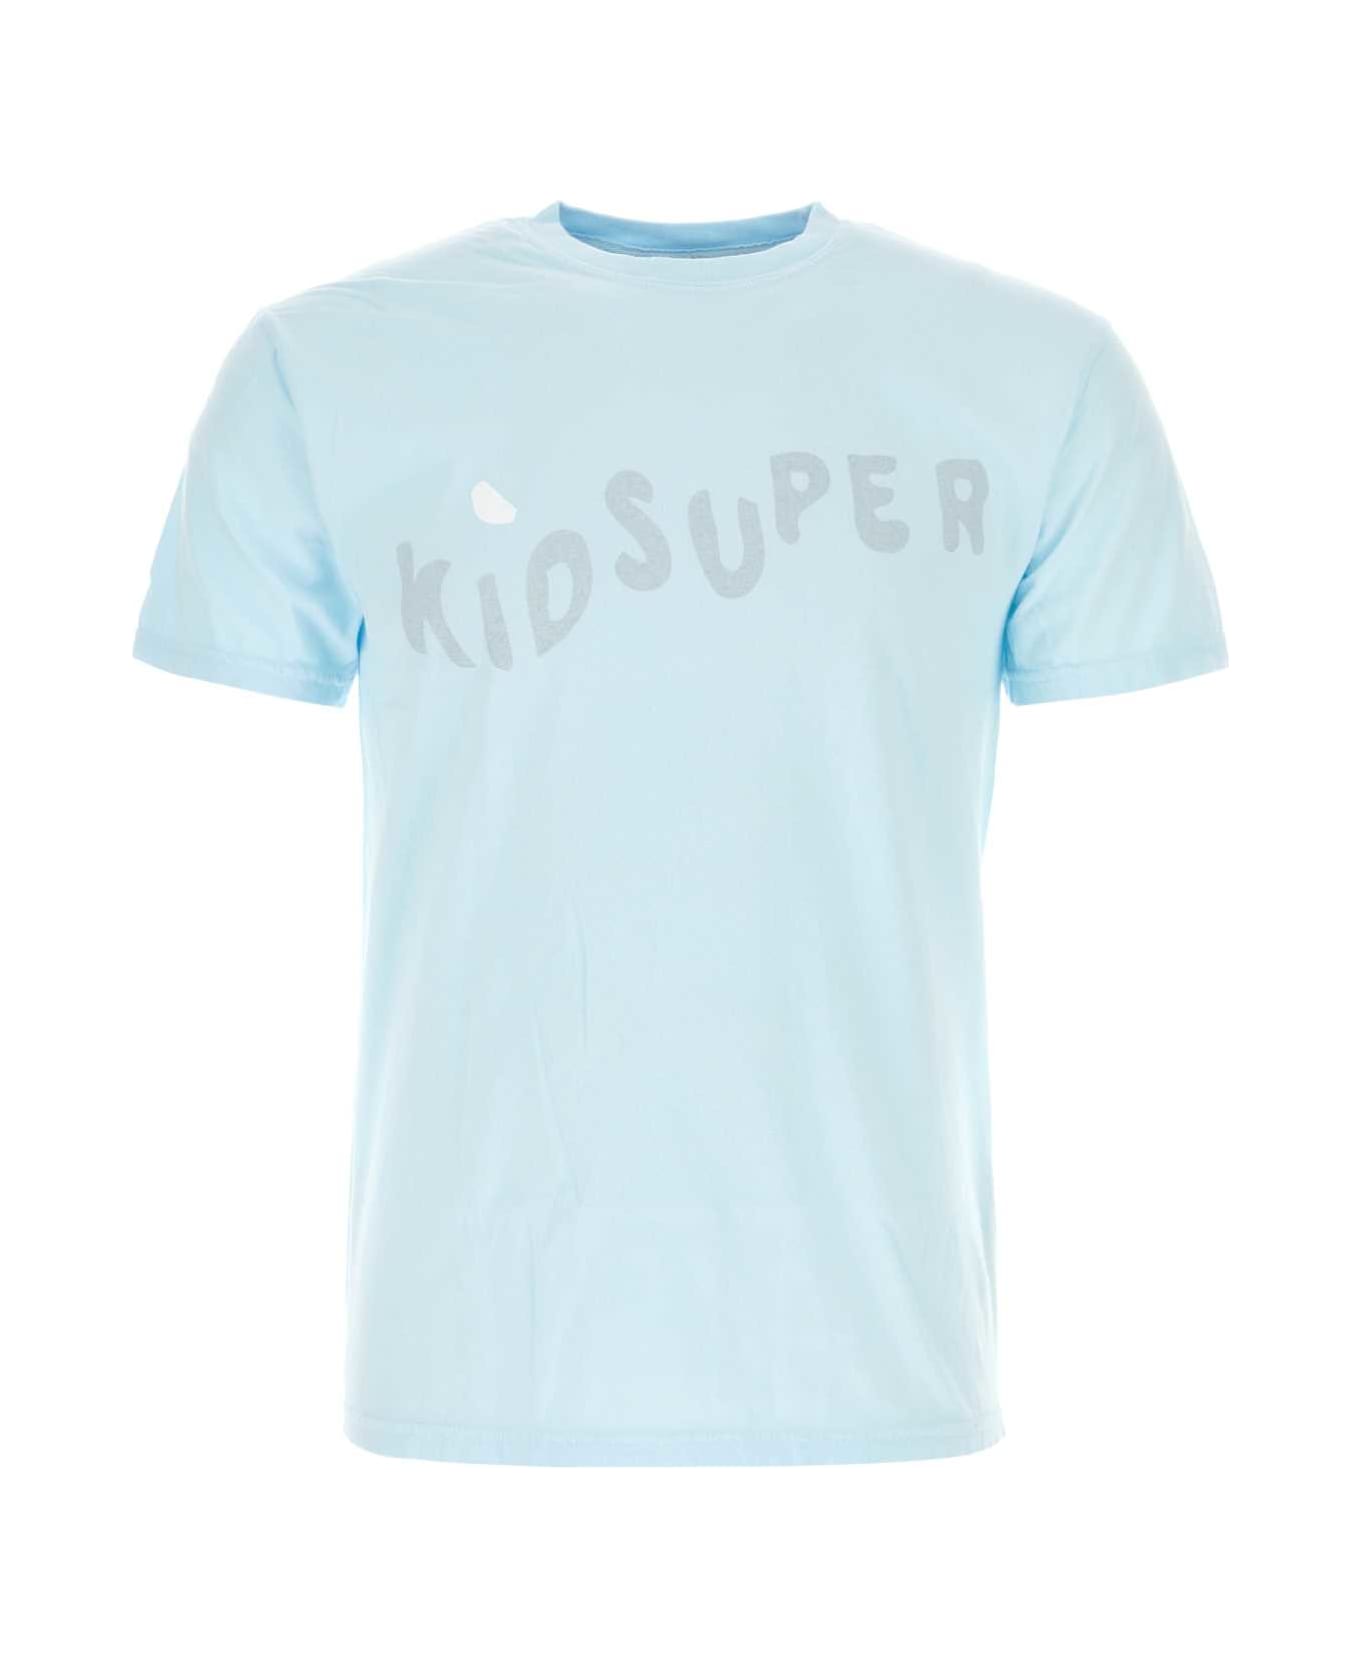 Kidsuper Light-blue Cotton T-shirt - KIDSUPERWAVE